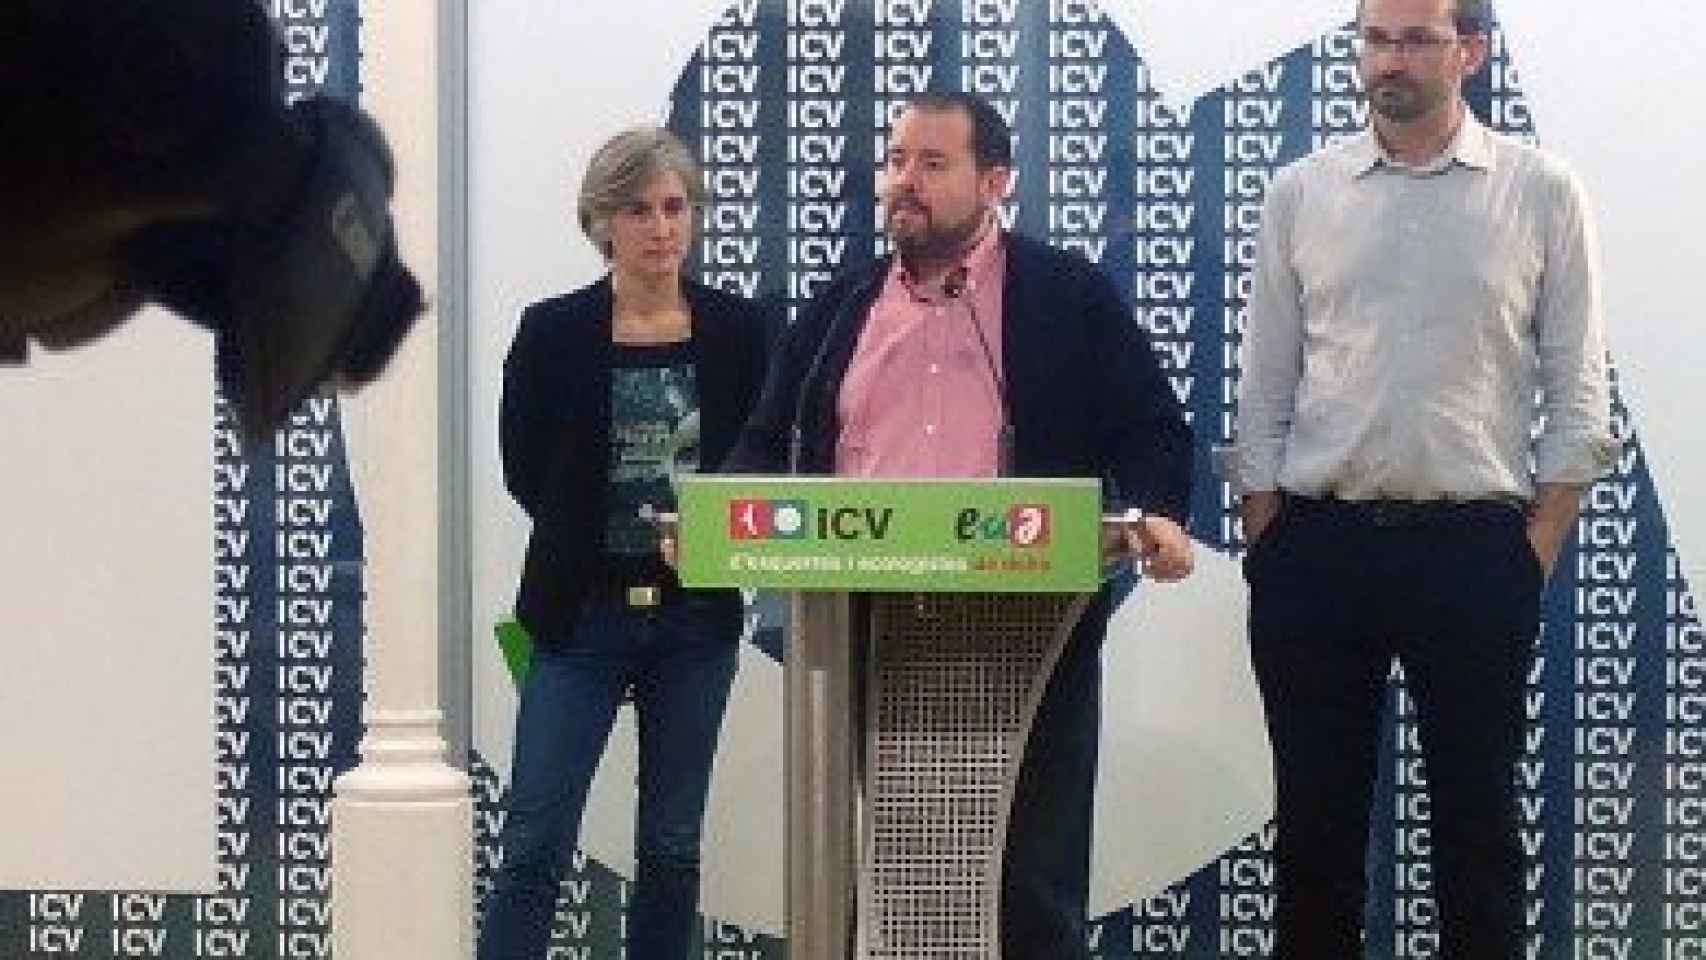 Los dos colíderes de ICV, Dolors Camats y Joan Herrera, flanqueando al consejero político de EUiA Joan Mena, en rueda de prensa.